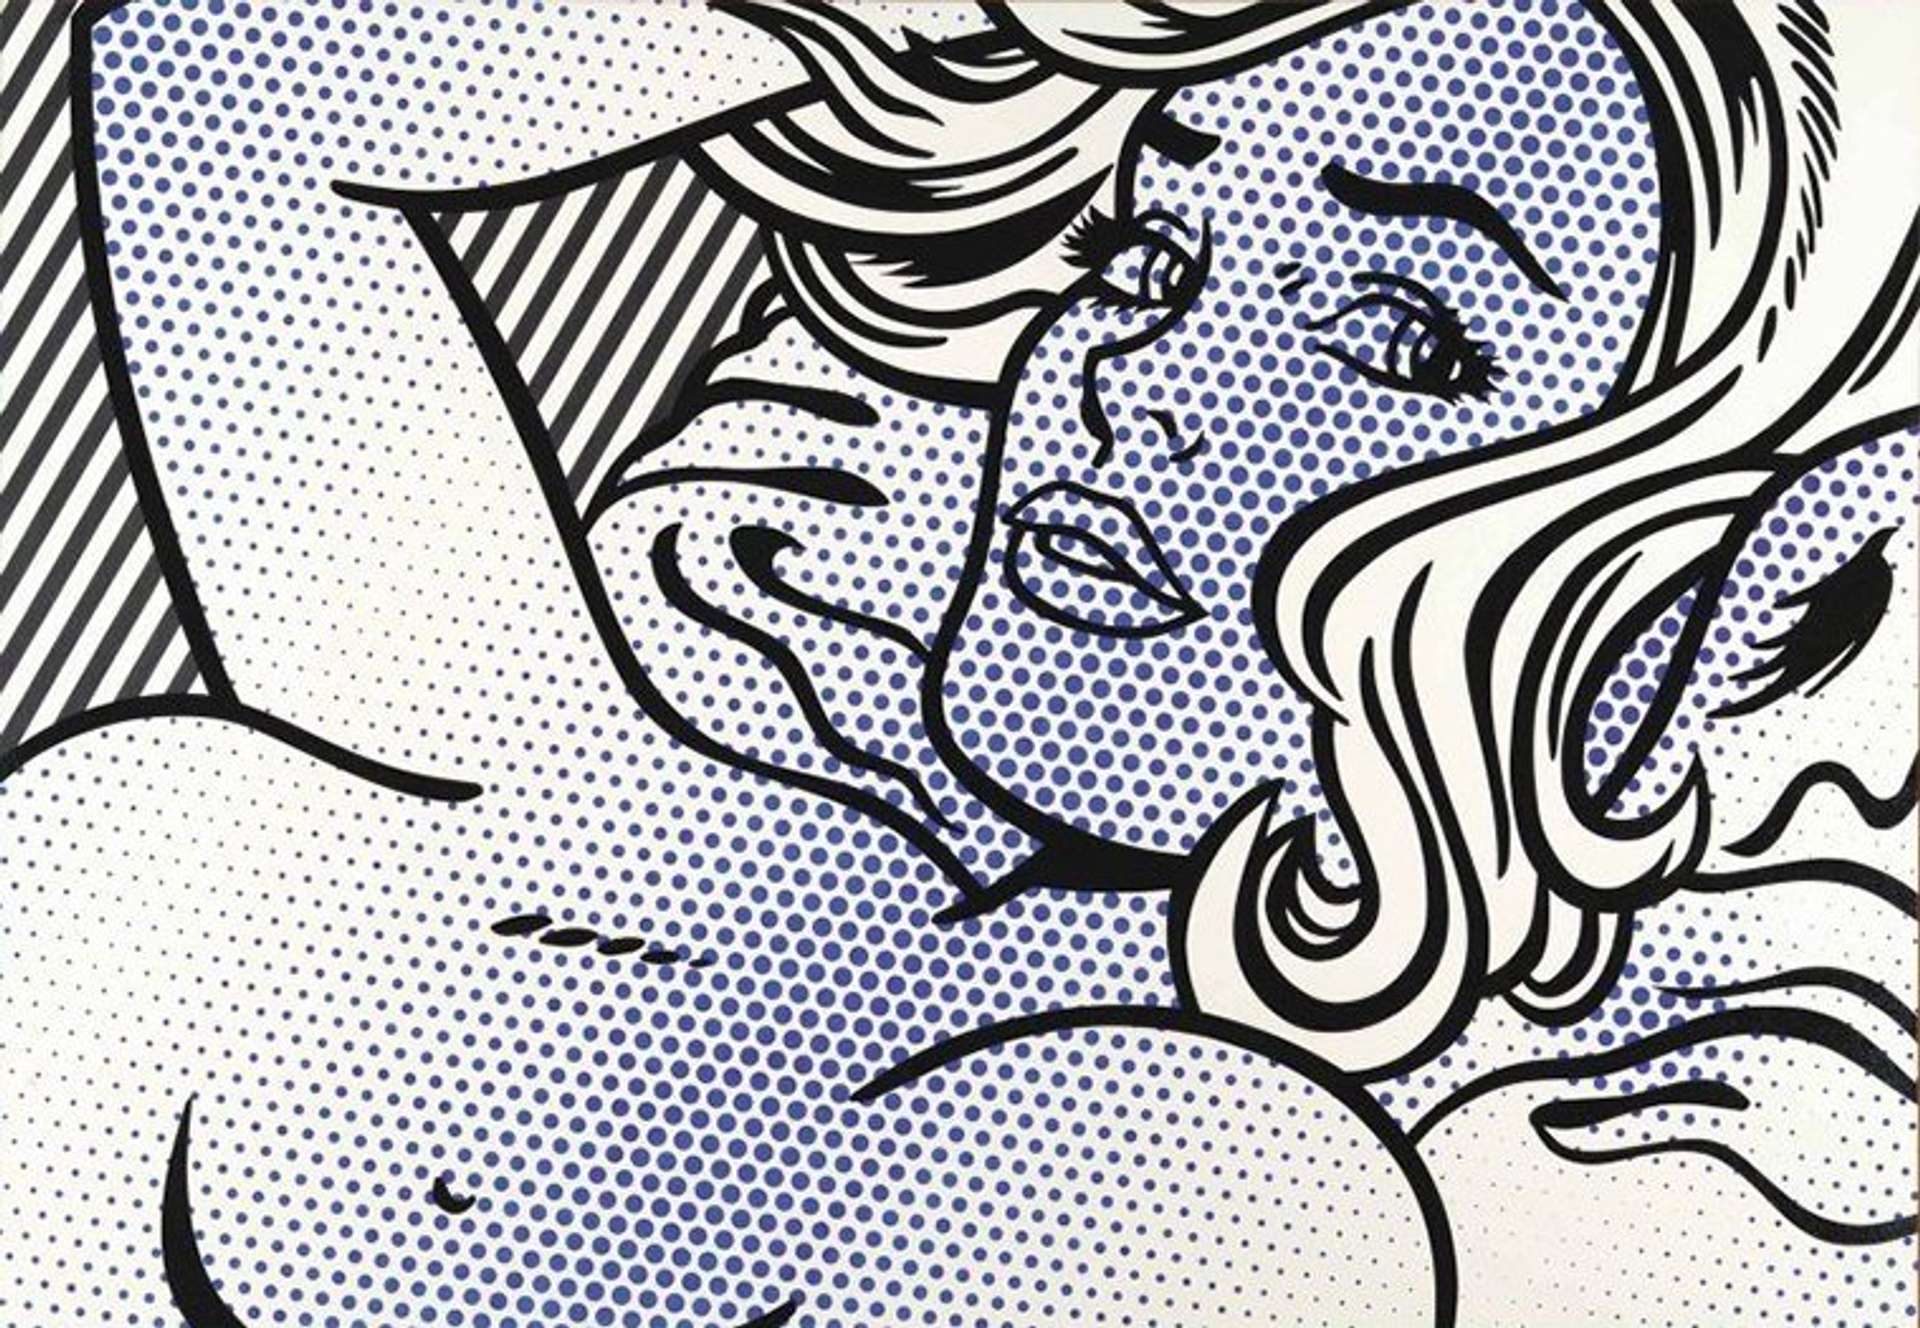 Seductive Girl by Roy Lichtenstein